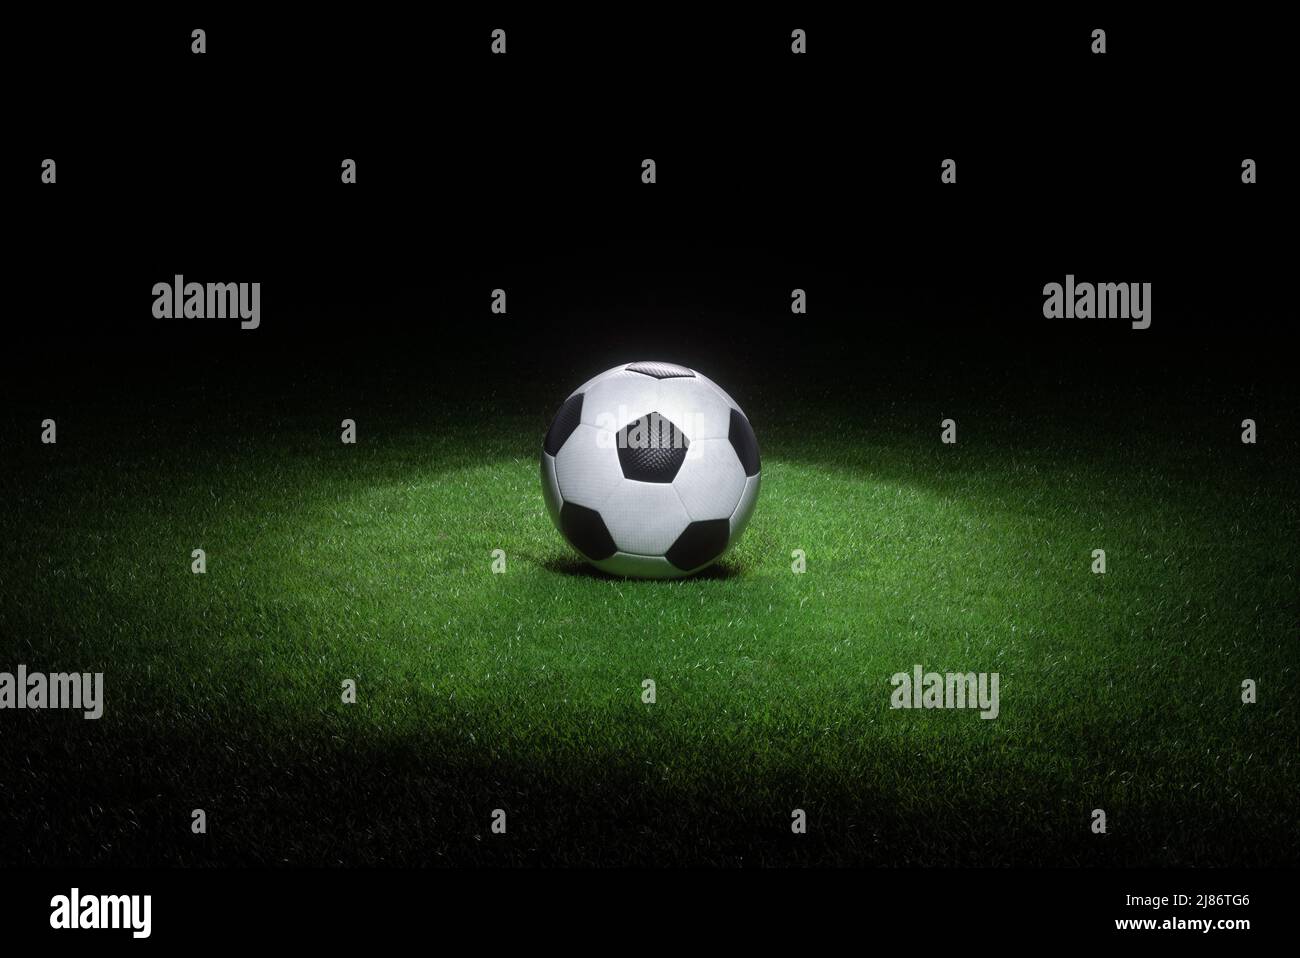 Schwarz-weißes Leder Fußball liegt auf frischem grünen Gras durch Scheinwerfer hervorgehoben. Abstraktes Thema der Sportausrüstung. Stockfoto